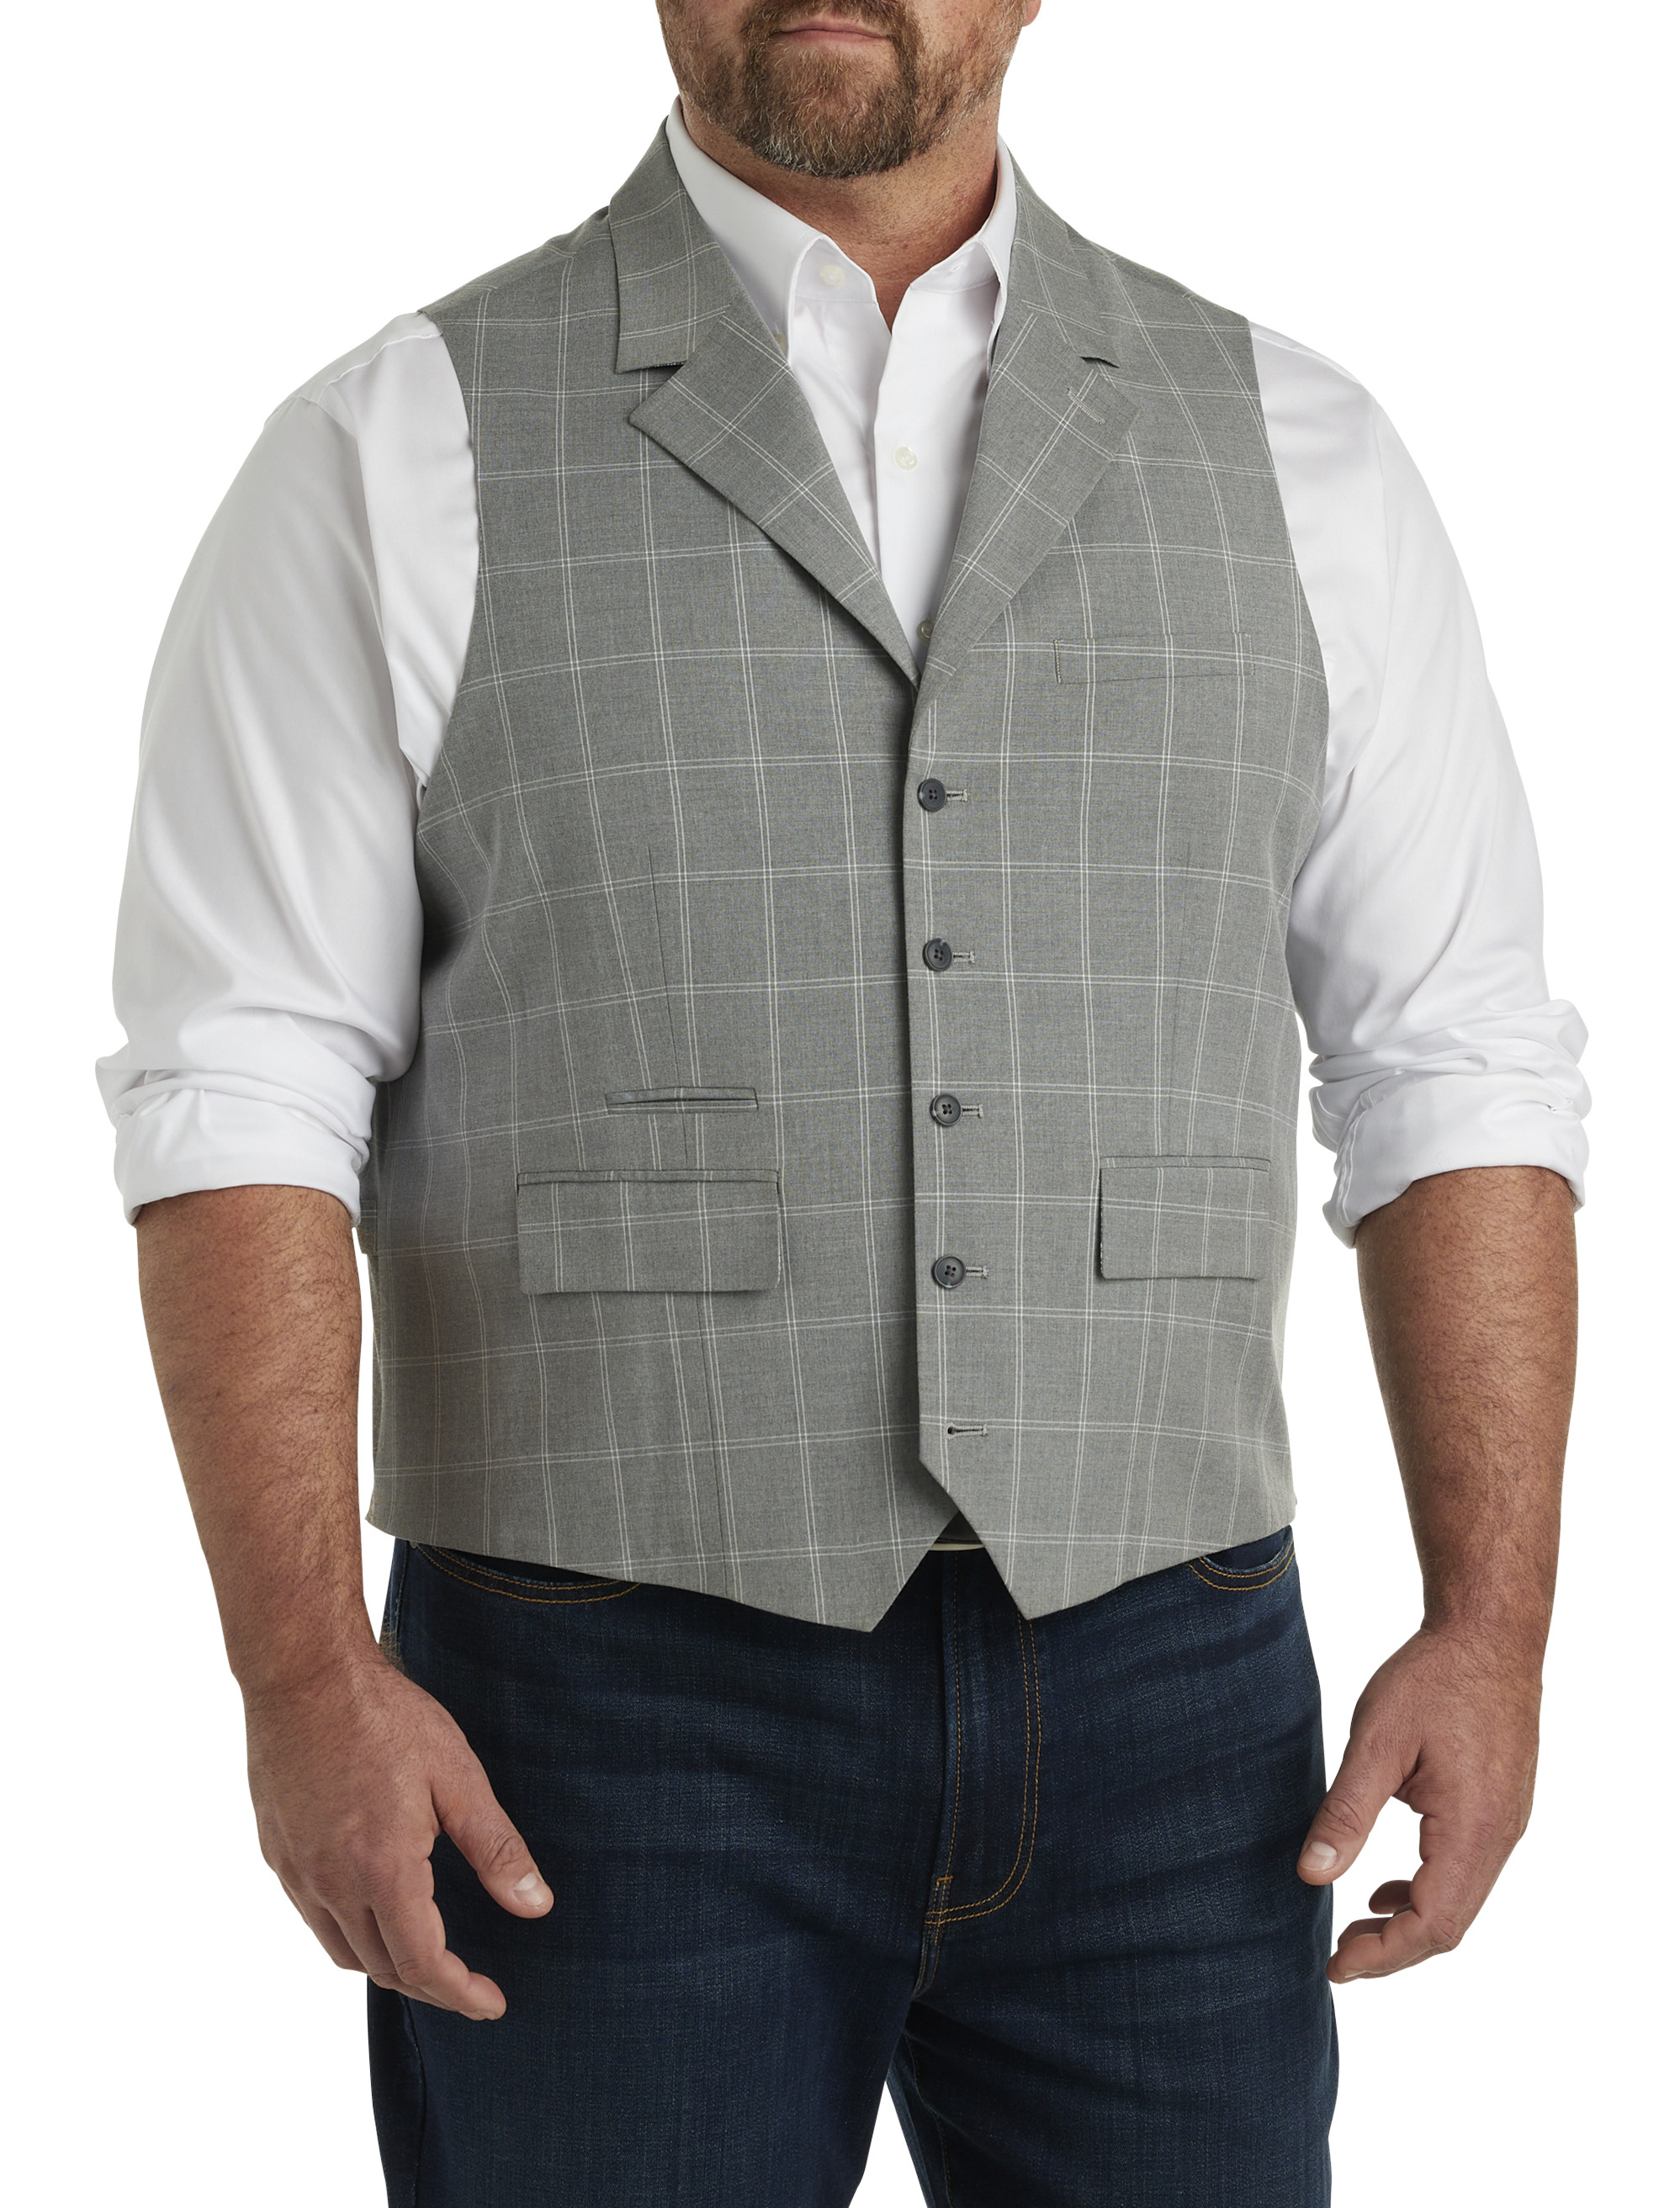 Fashion (01 Ligth Green)Men's Plaid Print Business Vest Suit